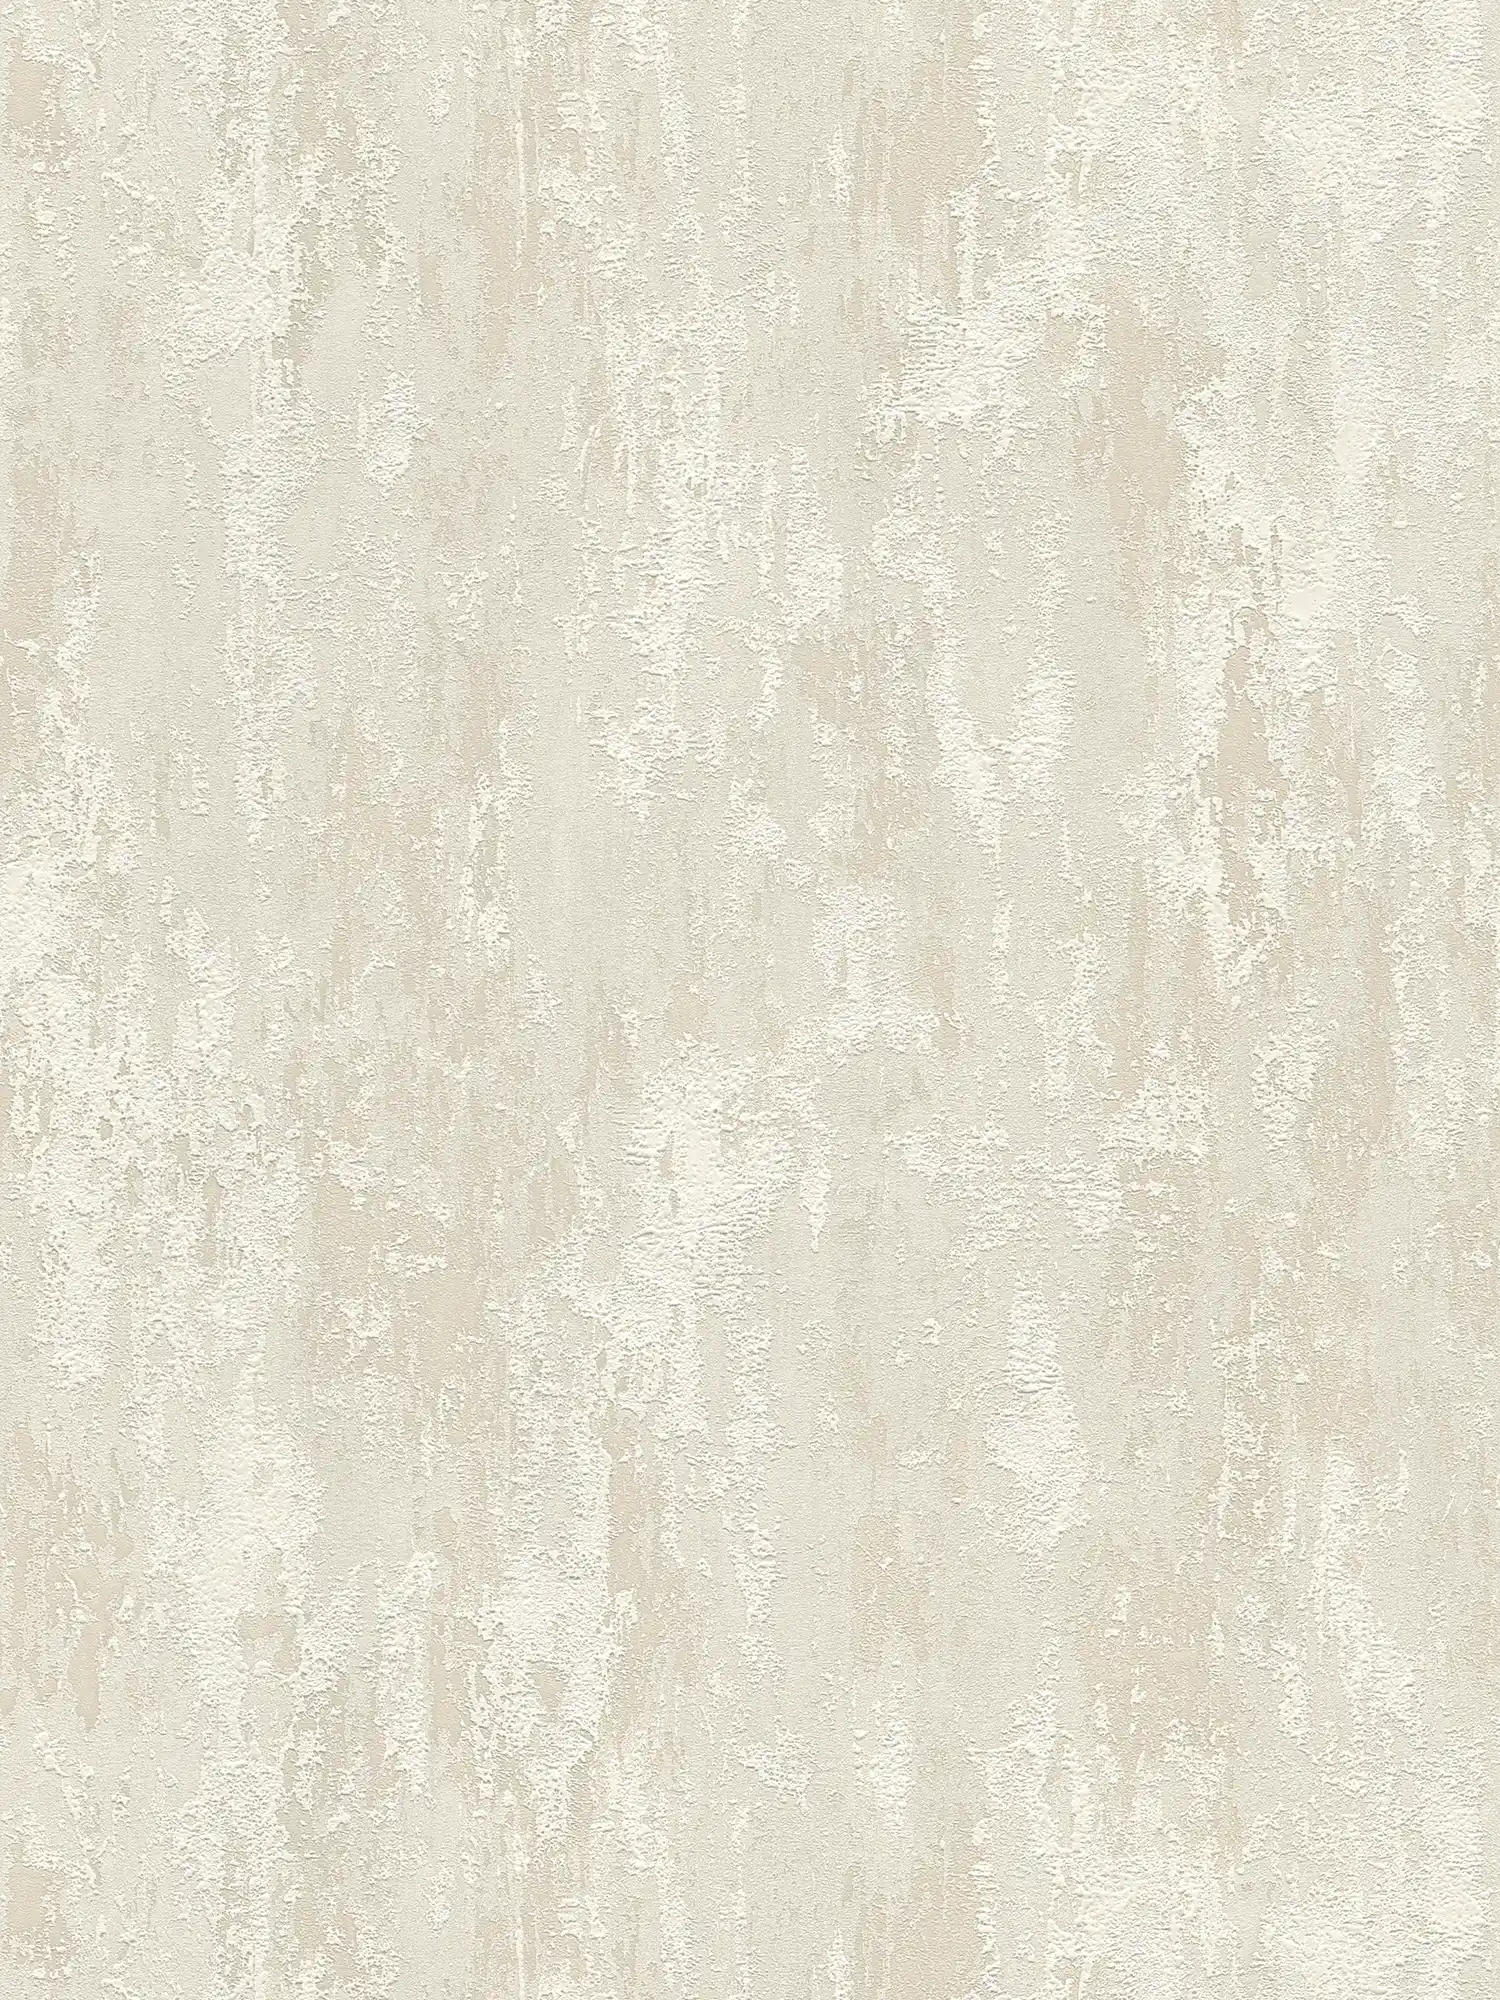 Papier peint structuré rustique aspect plâtre - beige, crème, or
